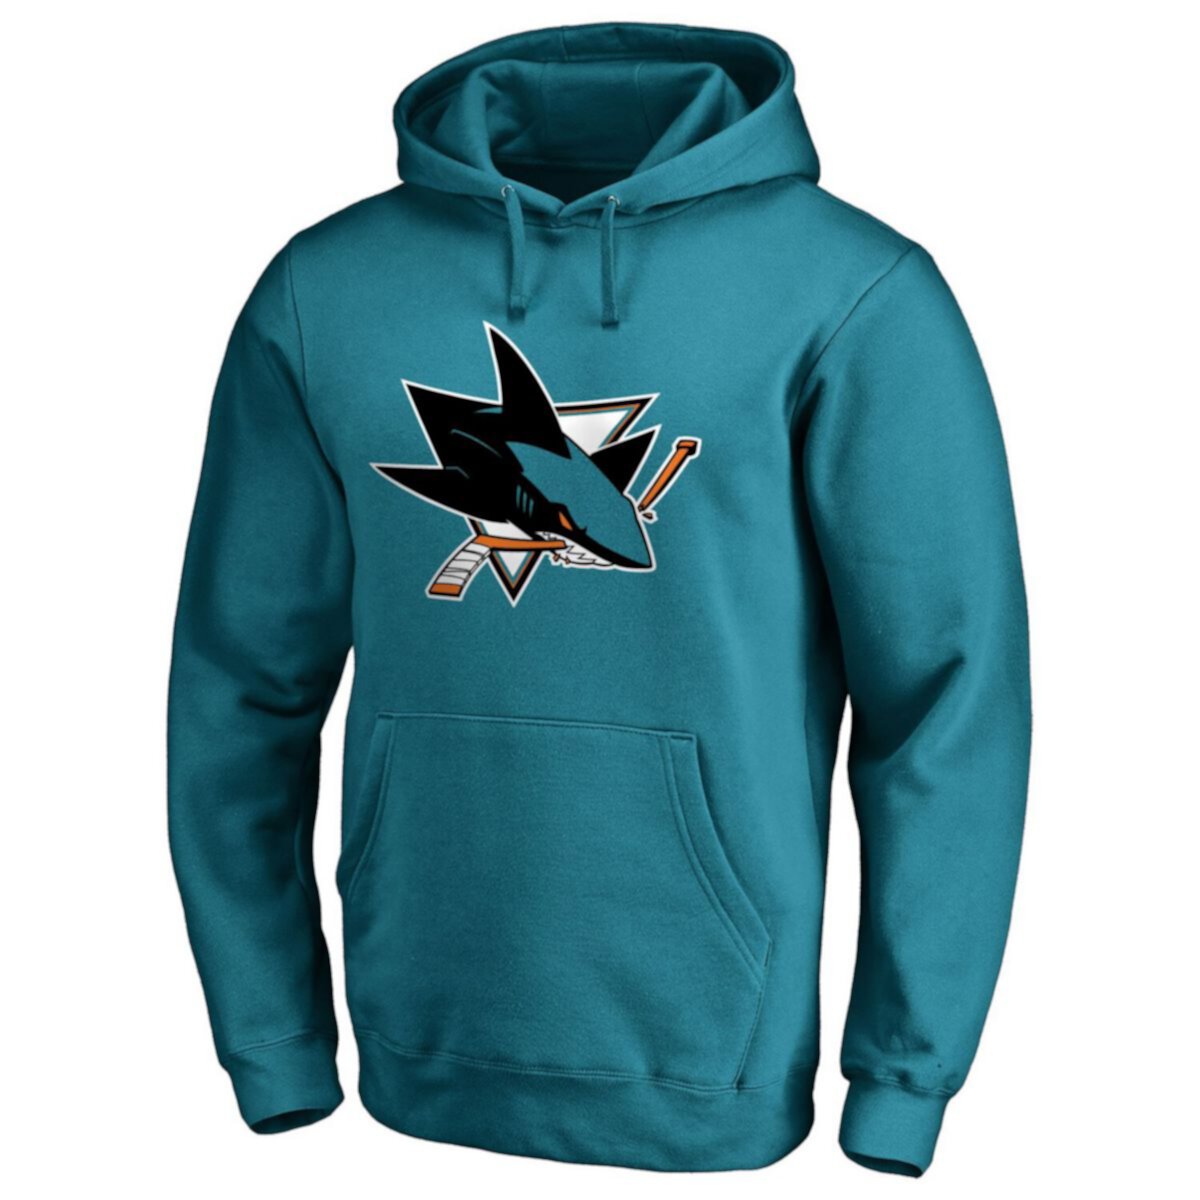 Купить Футболки Мужской пуловер с капюшоном с логотипом San Jose Sharks ...